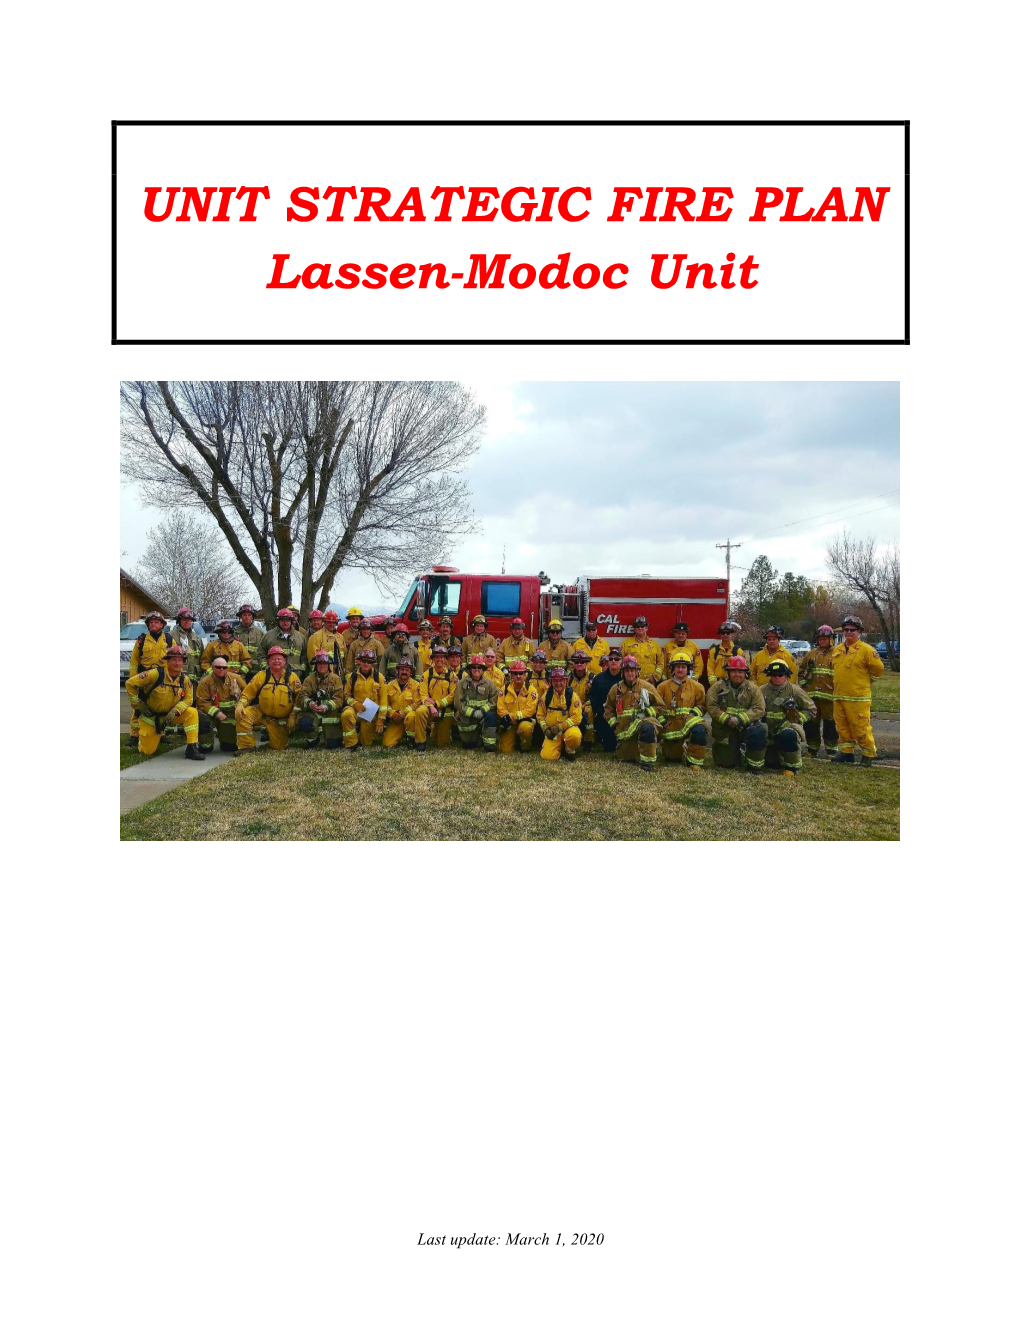 2020 Lassen-Modoc-Plumas Unit Fire Plan